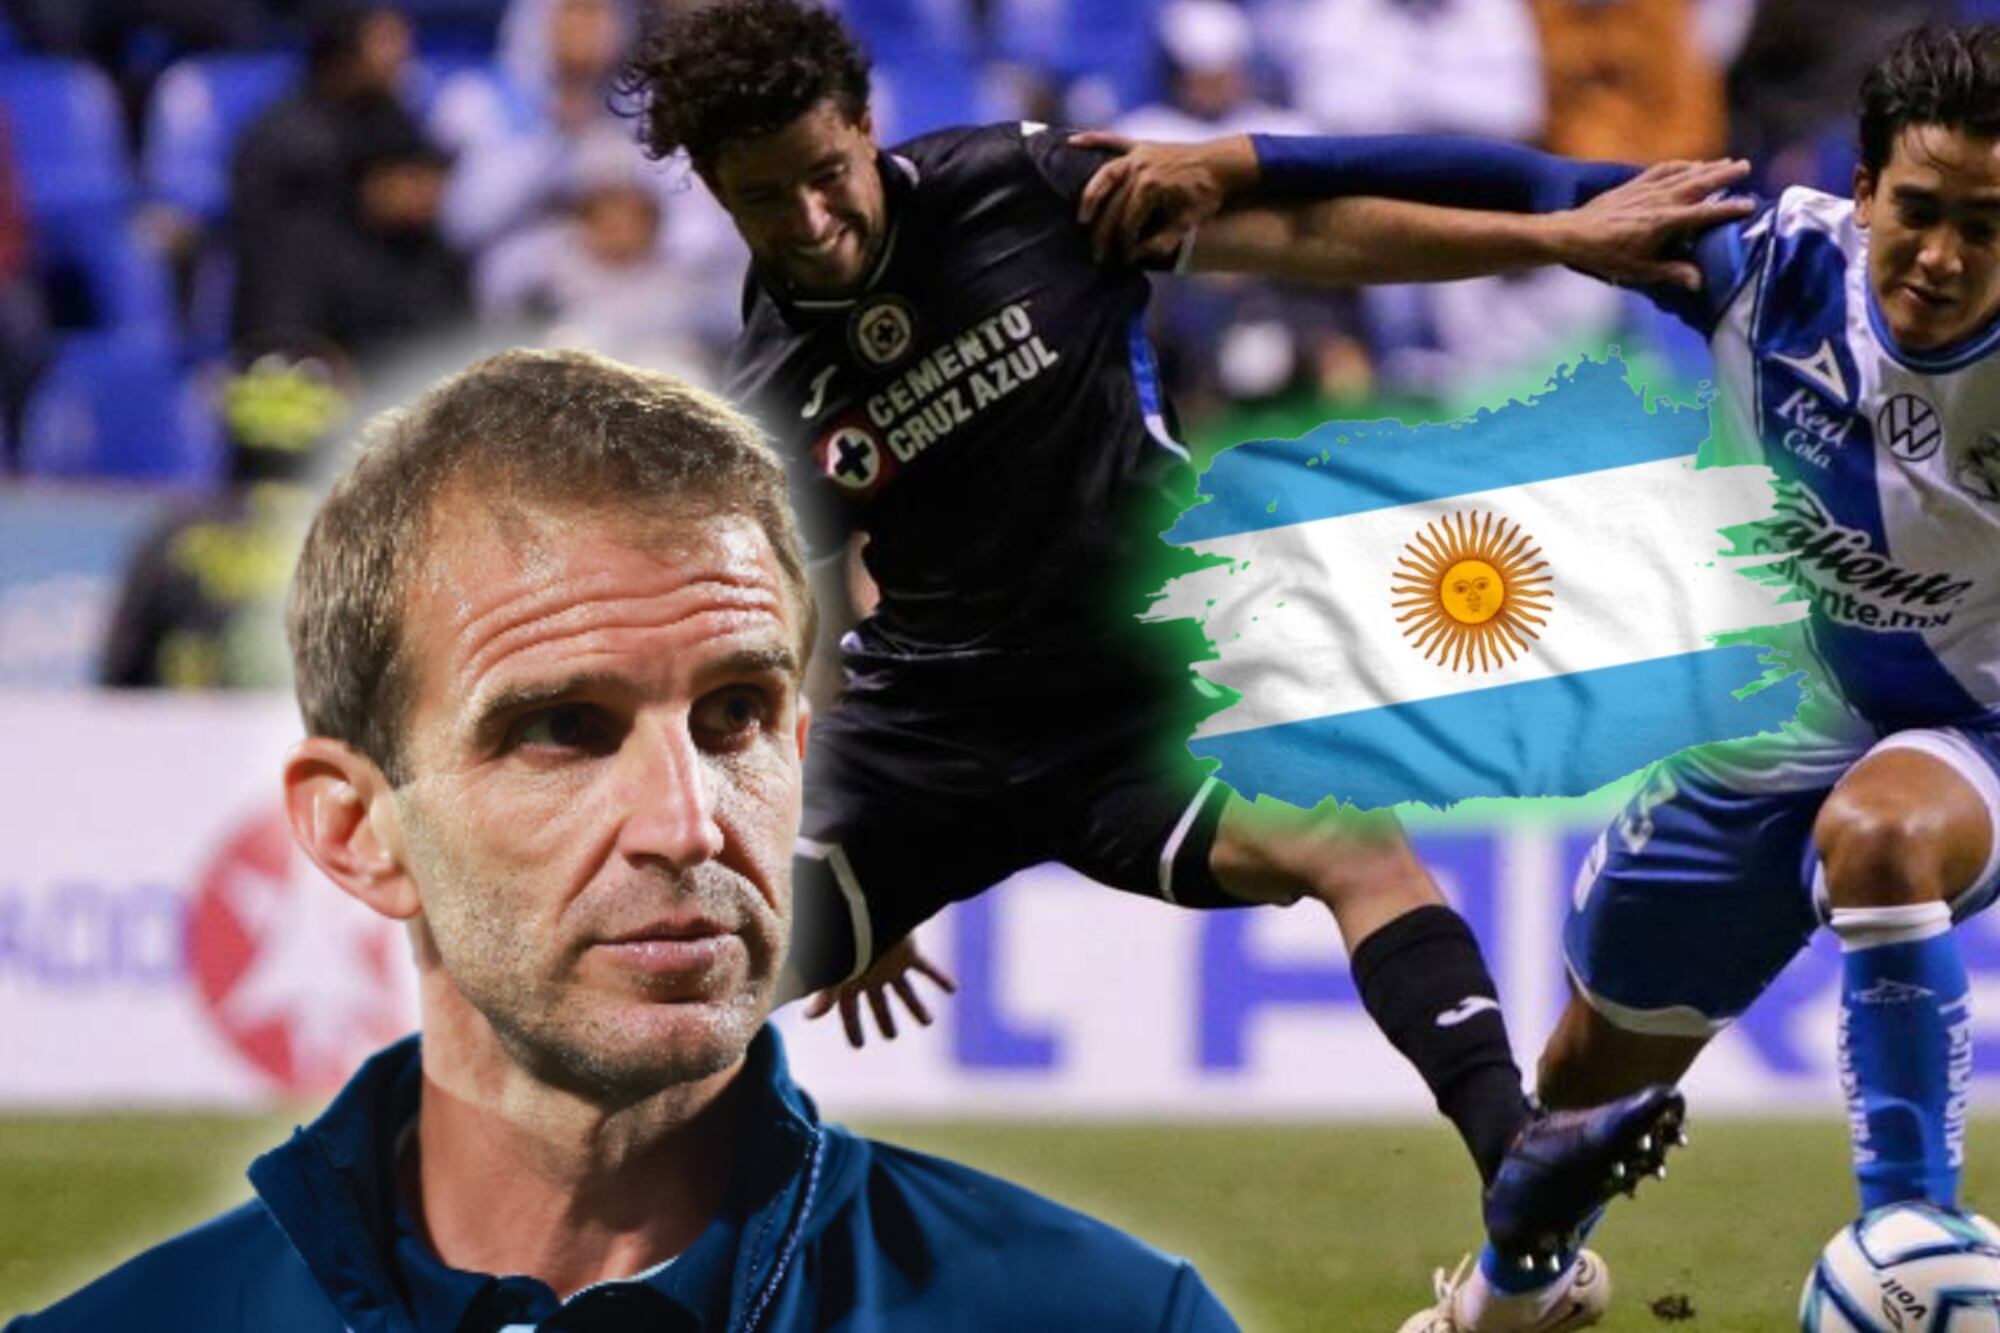 El refuerzo que Alonso traería desde Argentina, filtran su nombre en pleno Puebla vs. Cruz Azul